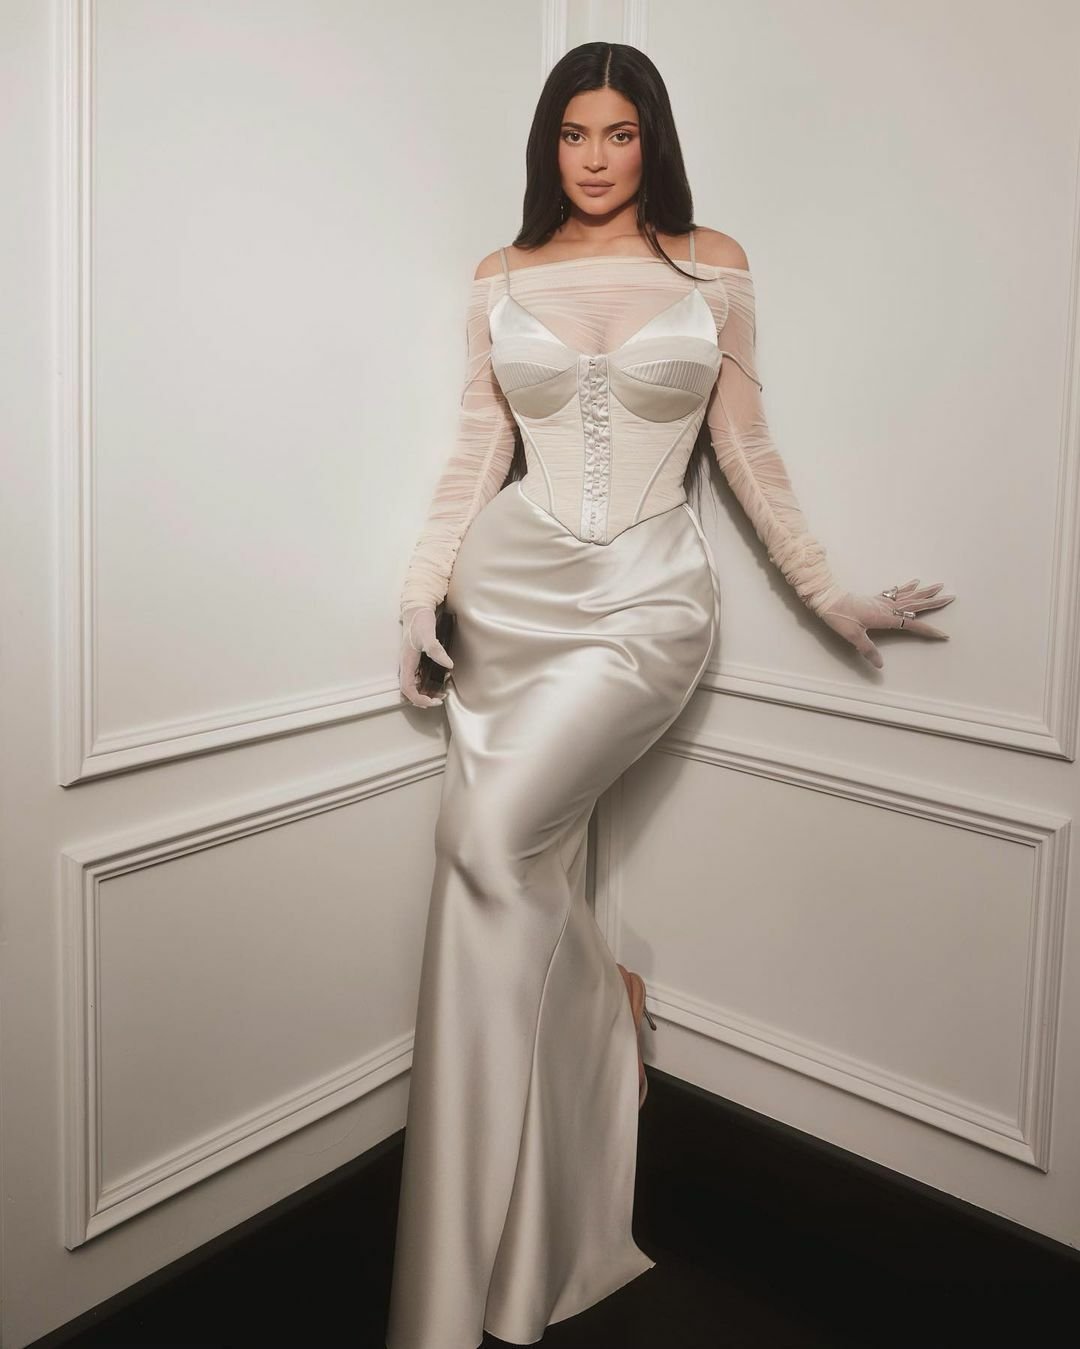 Kylie Jenner od porodu zhubla skoro 20 kilo